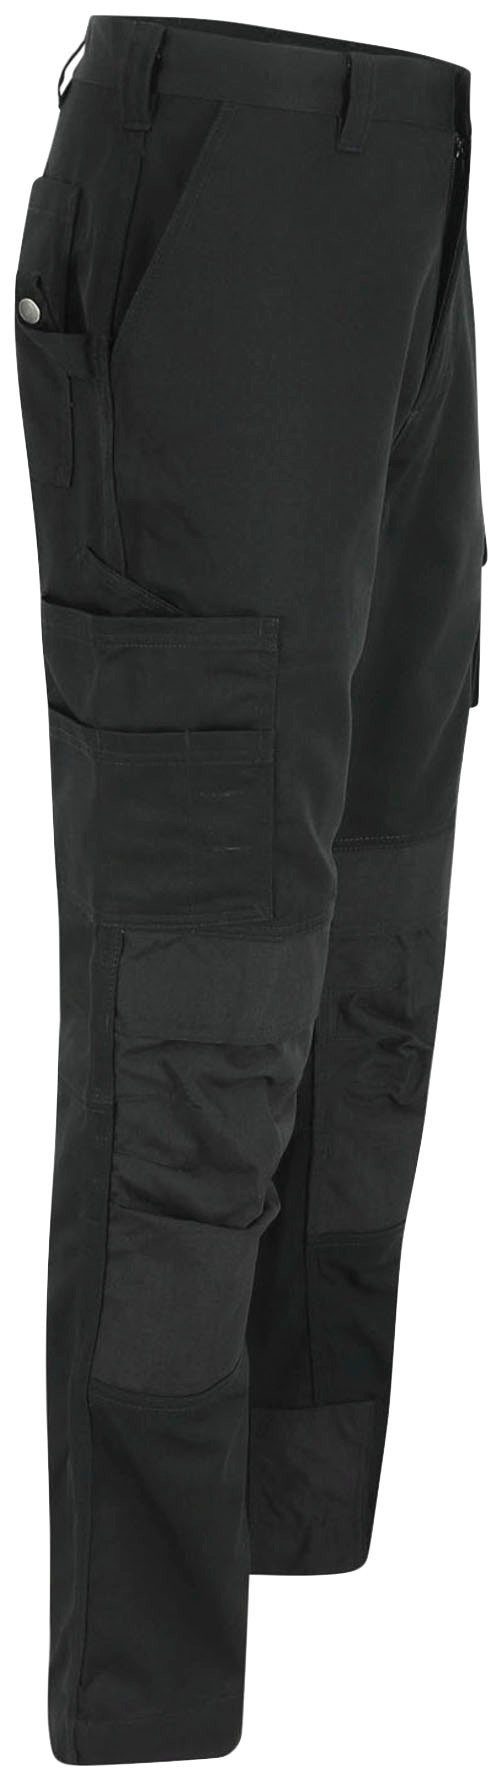 Herock Arbeitshose TITAN HOSE SHORTLEG schwarz angenehm Kurzgröβe, 12 3-Naht, wasserabweisend, Taschen, sehr